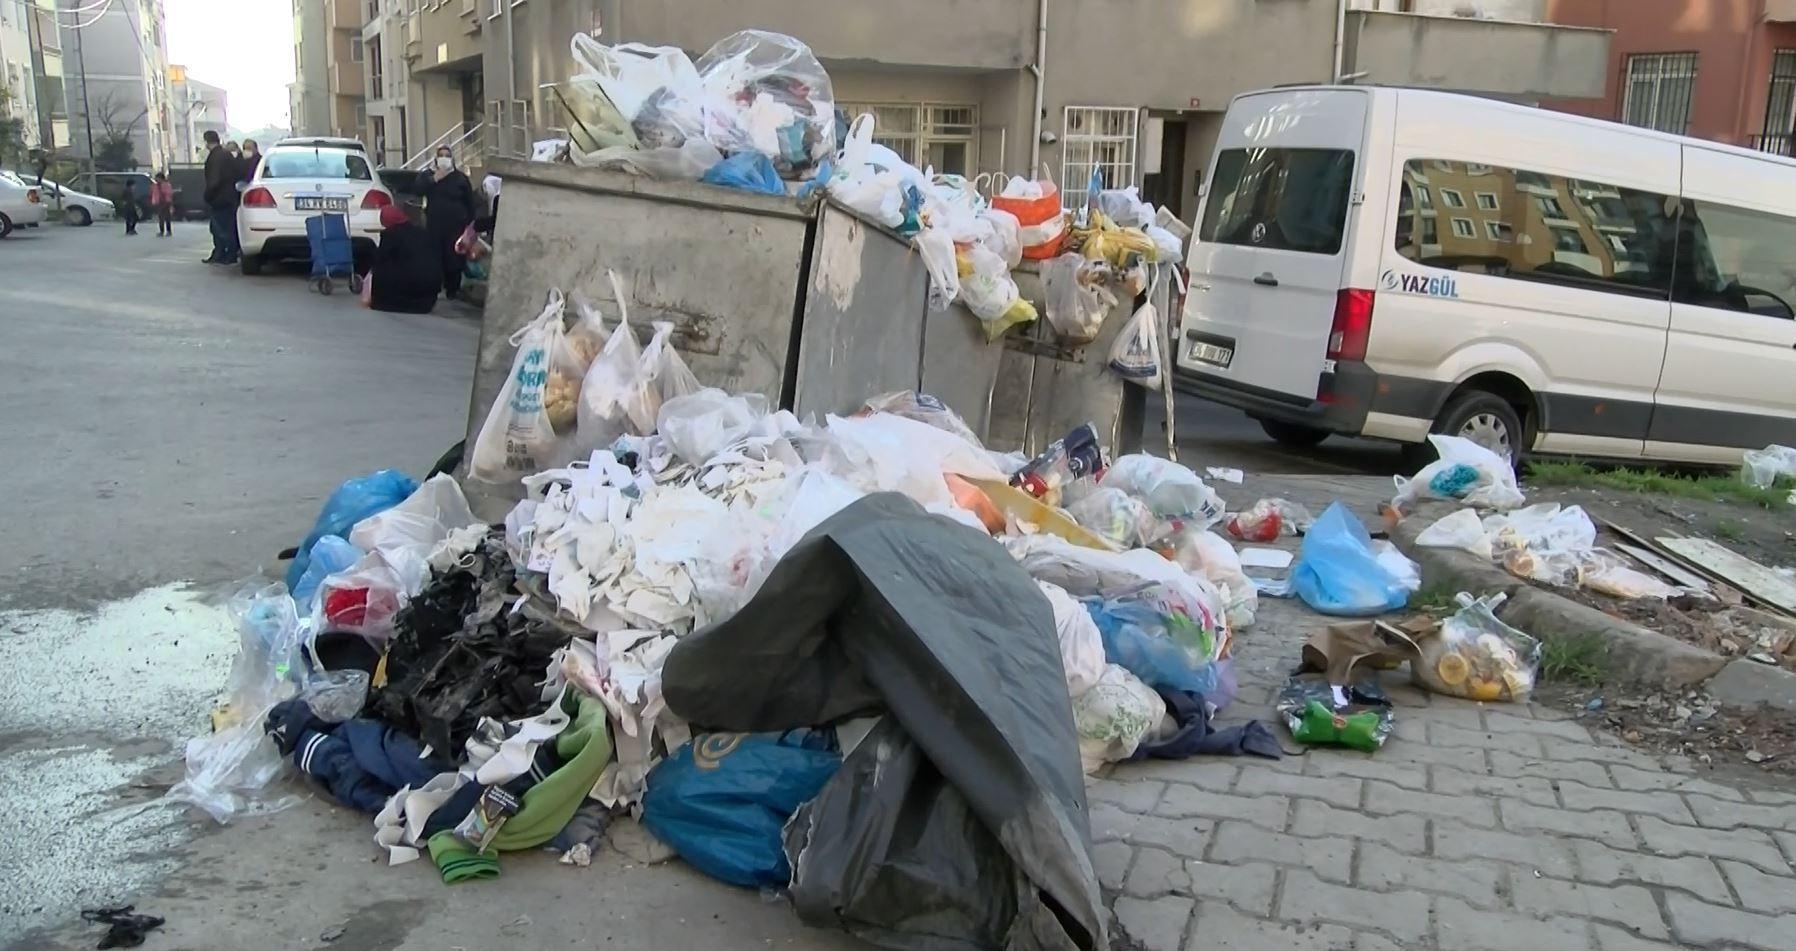 Maltepede sokaklarda çöp yığınları oluştu,  konteynerler doldu taştı